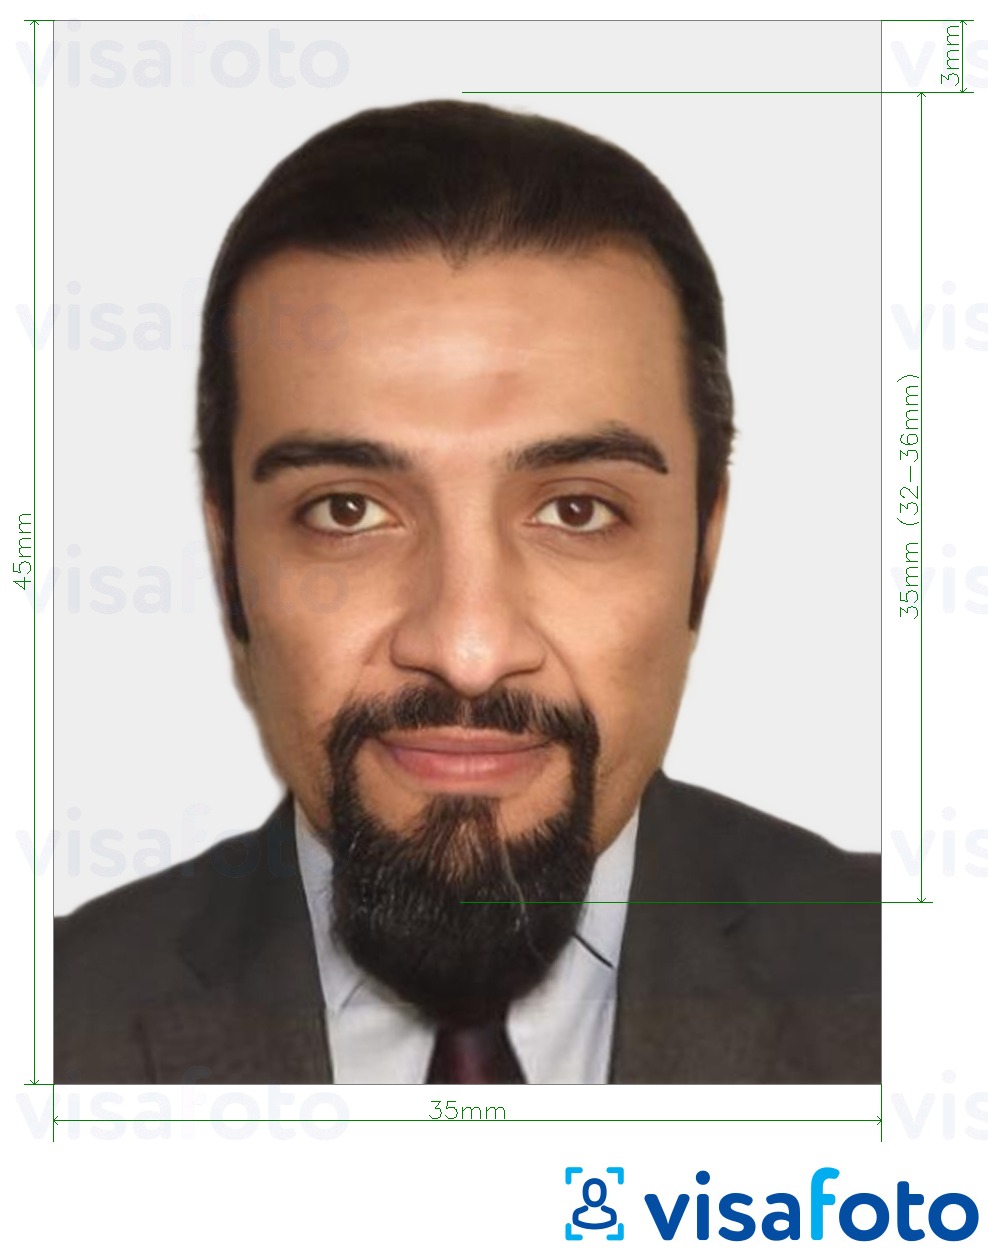 Contoh dari foto untuk Paspor Maroko 35x45 mm (3,5x4,5 cm) dengan ukuran spesifikasi yang tepat